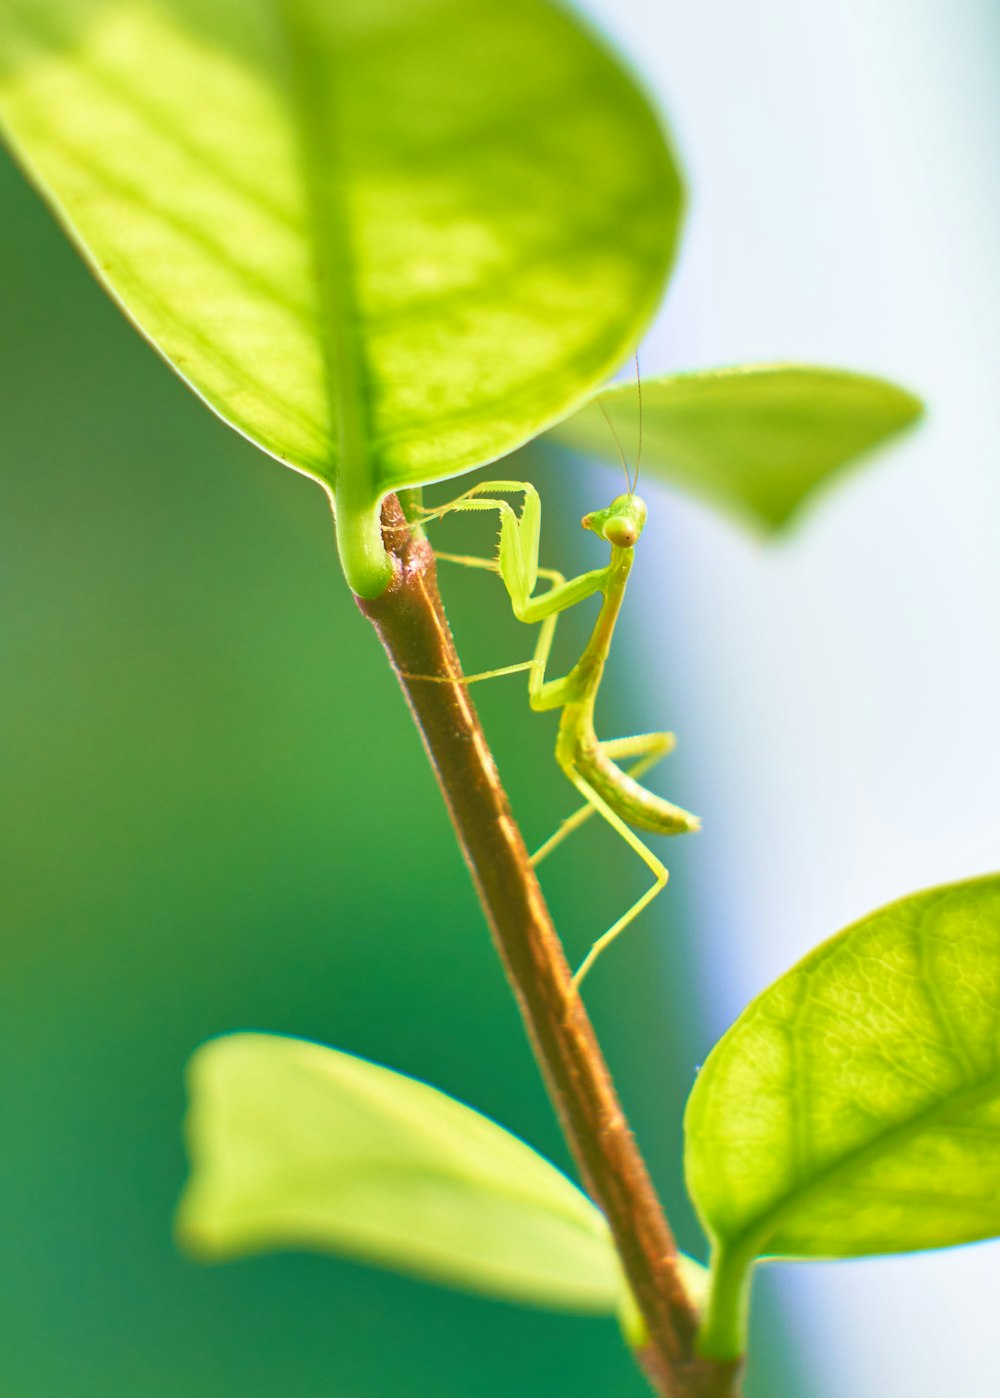 ein grünes Insekt, das auf einem grünen Blatt sitzt